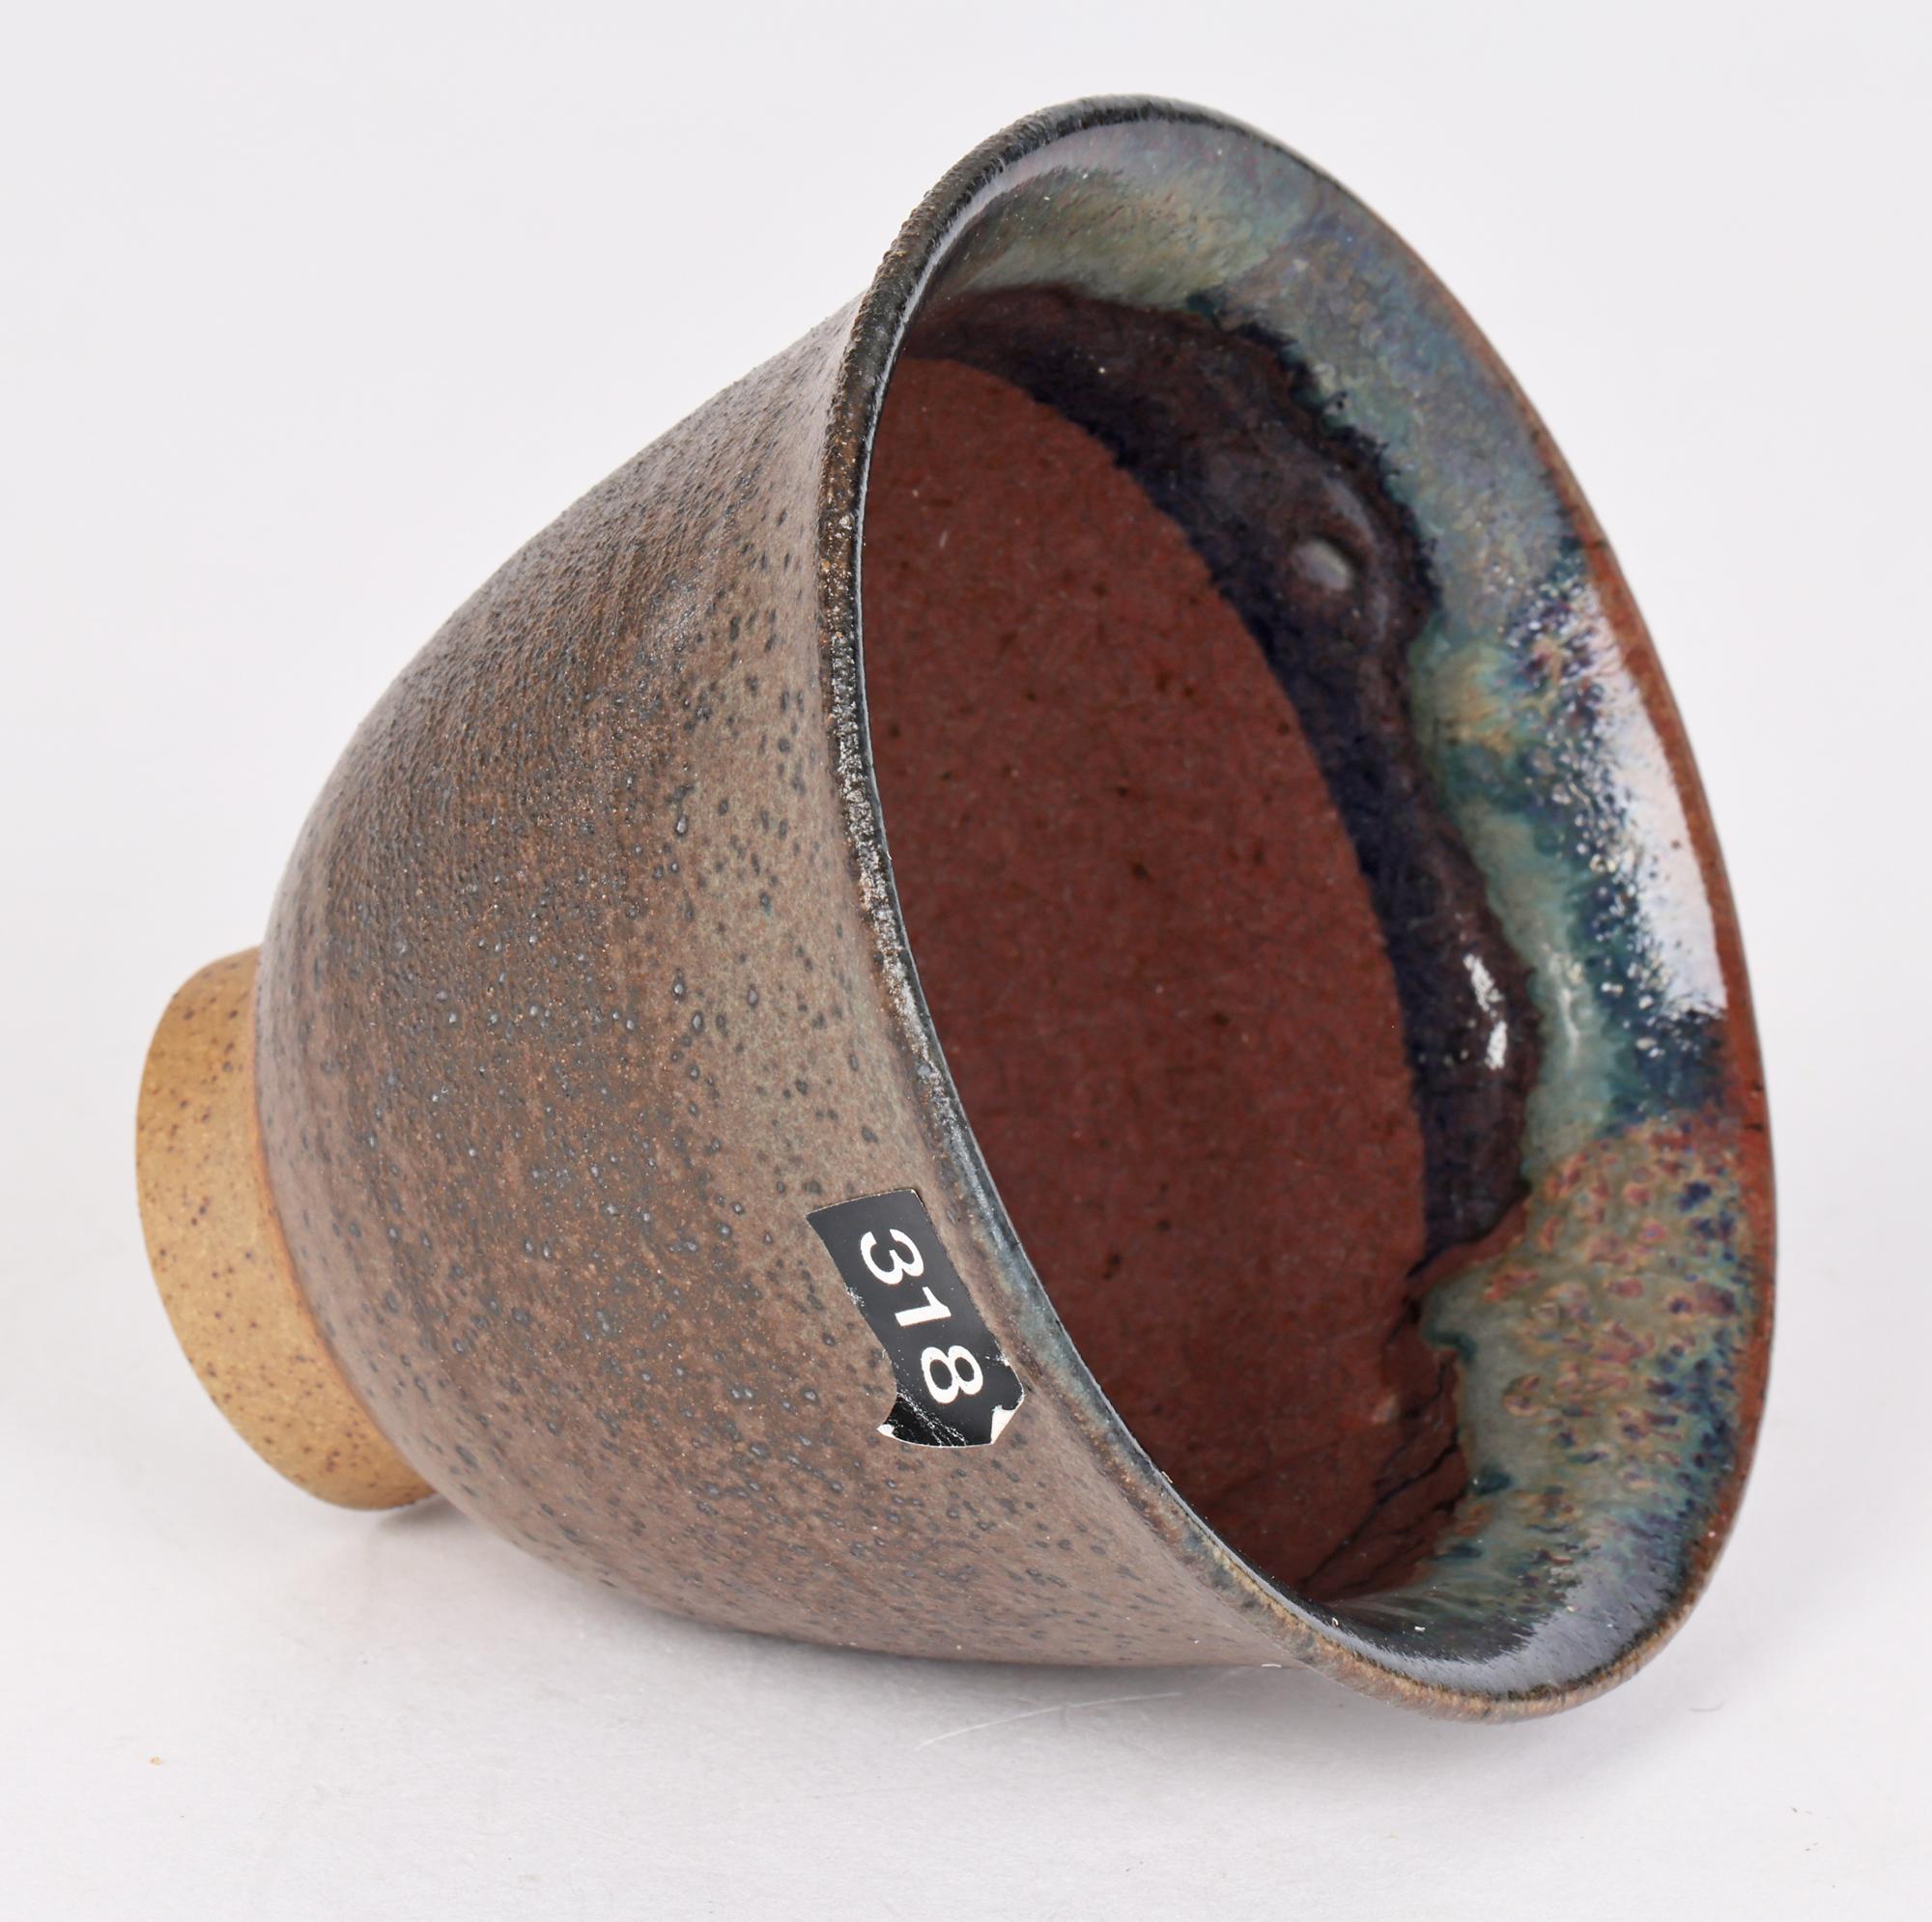 Vernissé Eric James Mellon Studio Pottery - Tasse émaillée expérimentale 2006  en vente